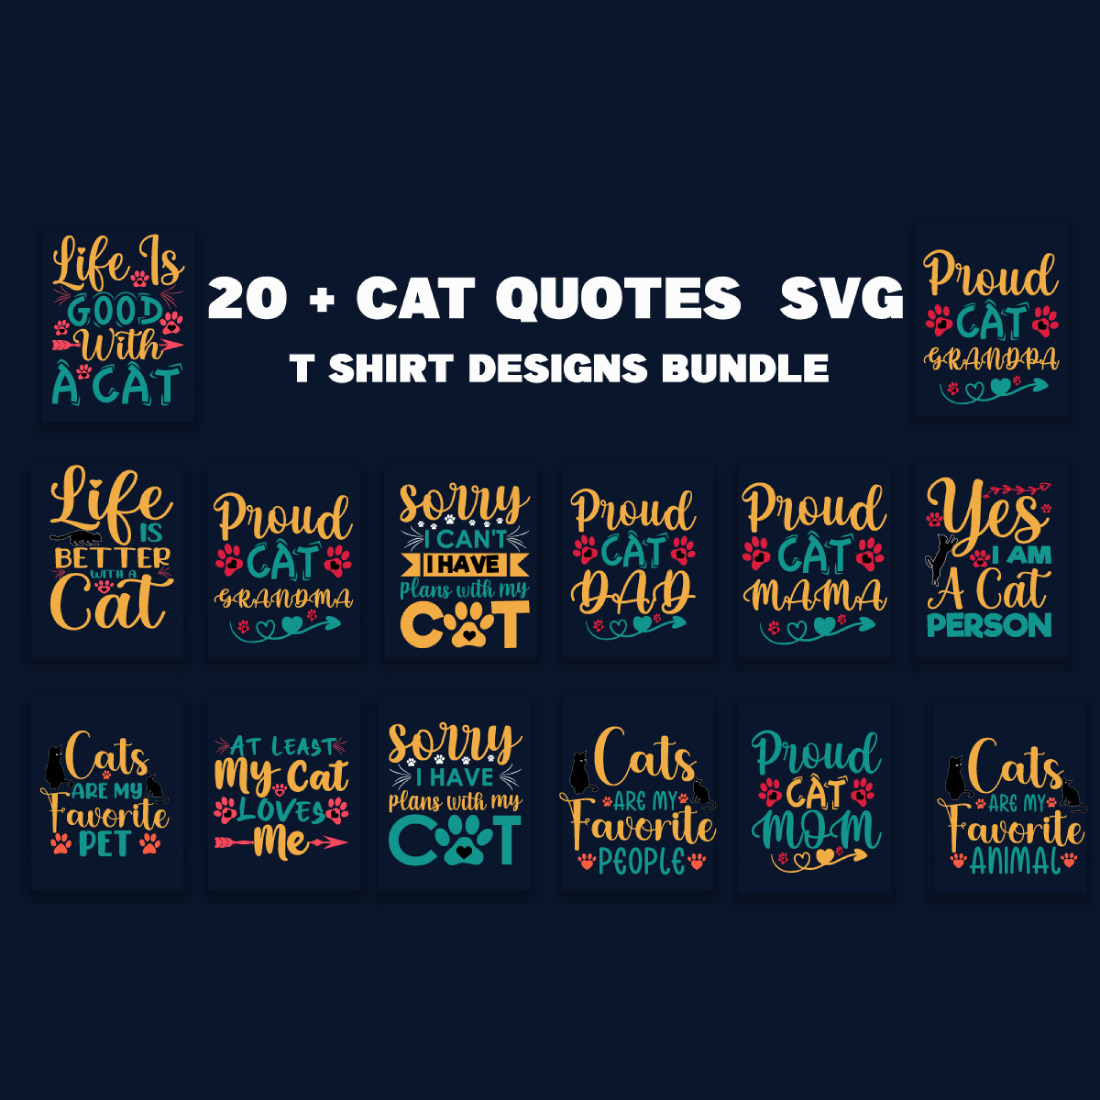 Cat Quotes SVG T-Shirt Designs Bundle preview image.